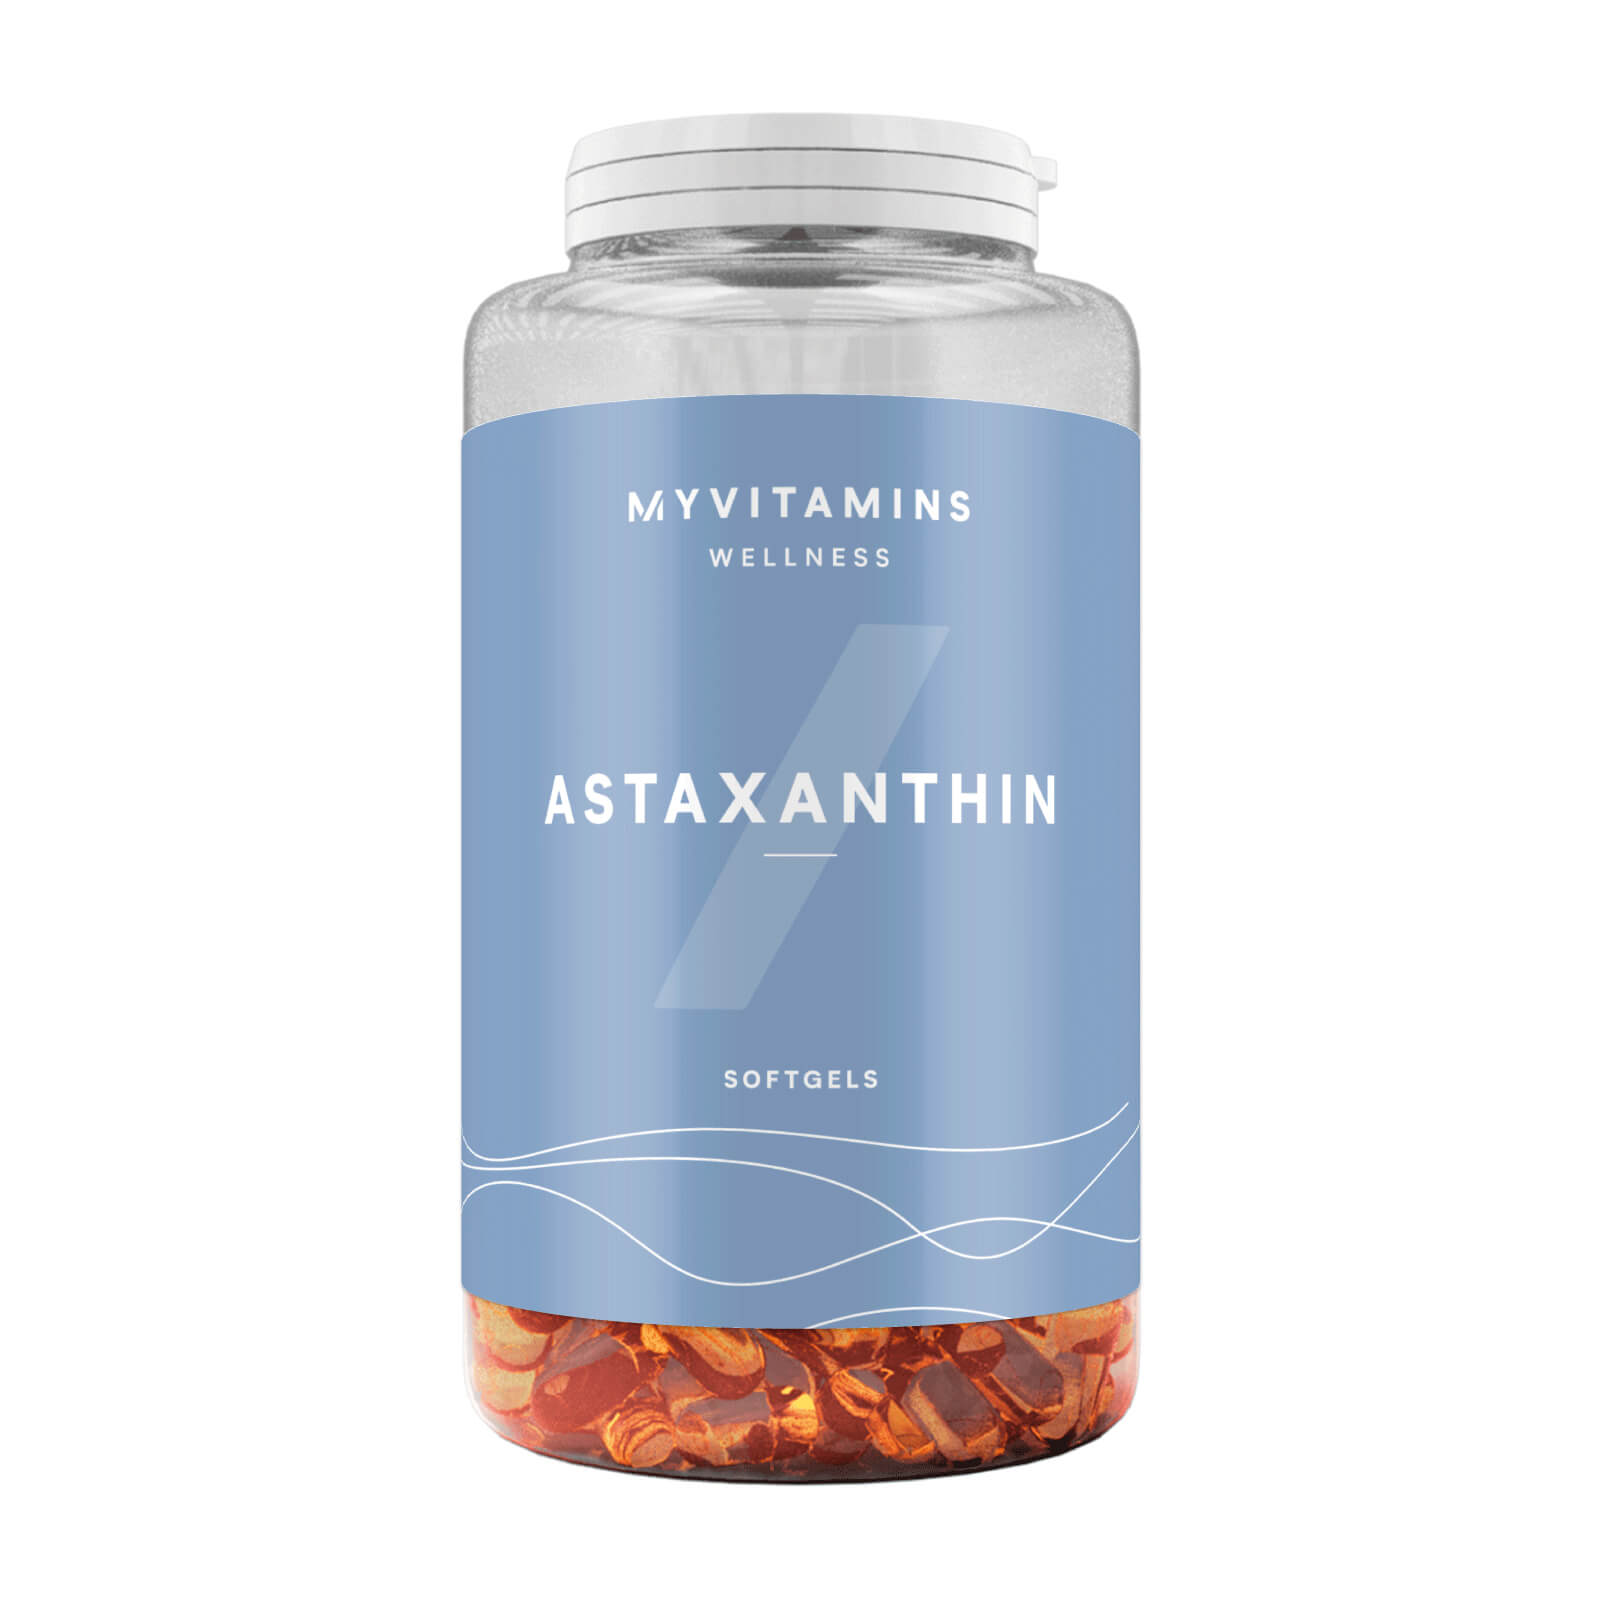 Myvitamins Astaxanthin Softgel - 90Kapseln